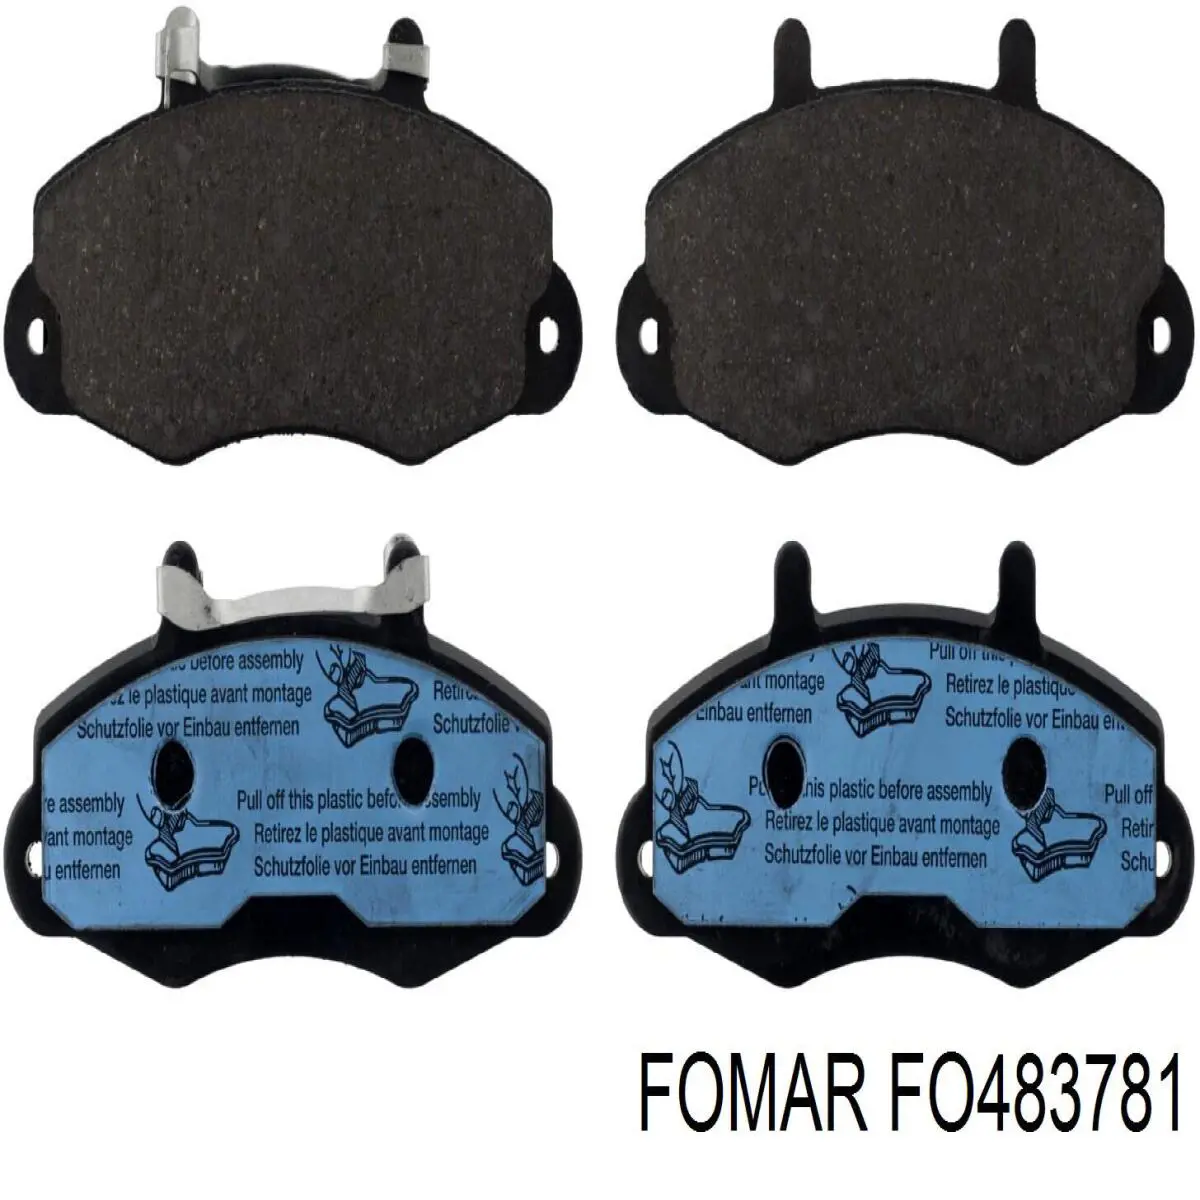 FO 483781 Fomar Roulunds колодки тормозные передние дисковые